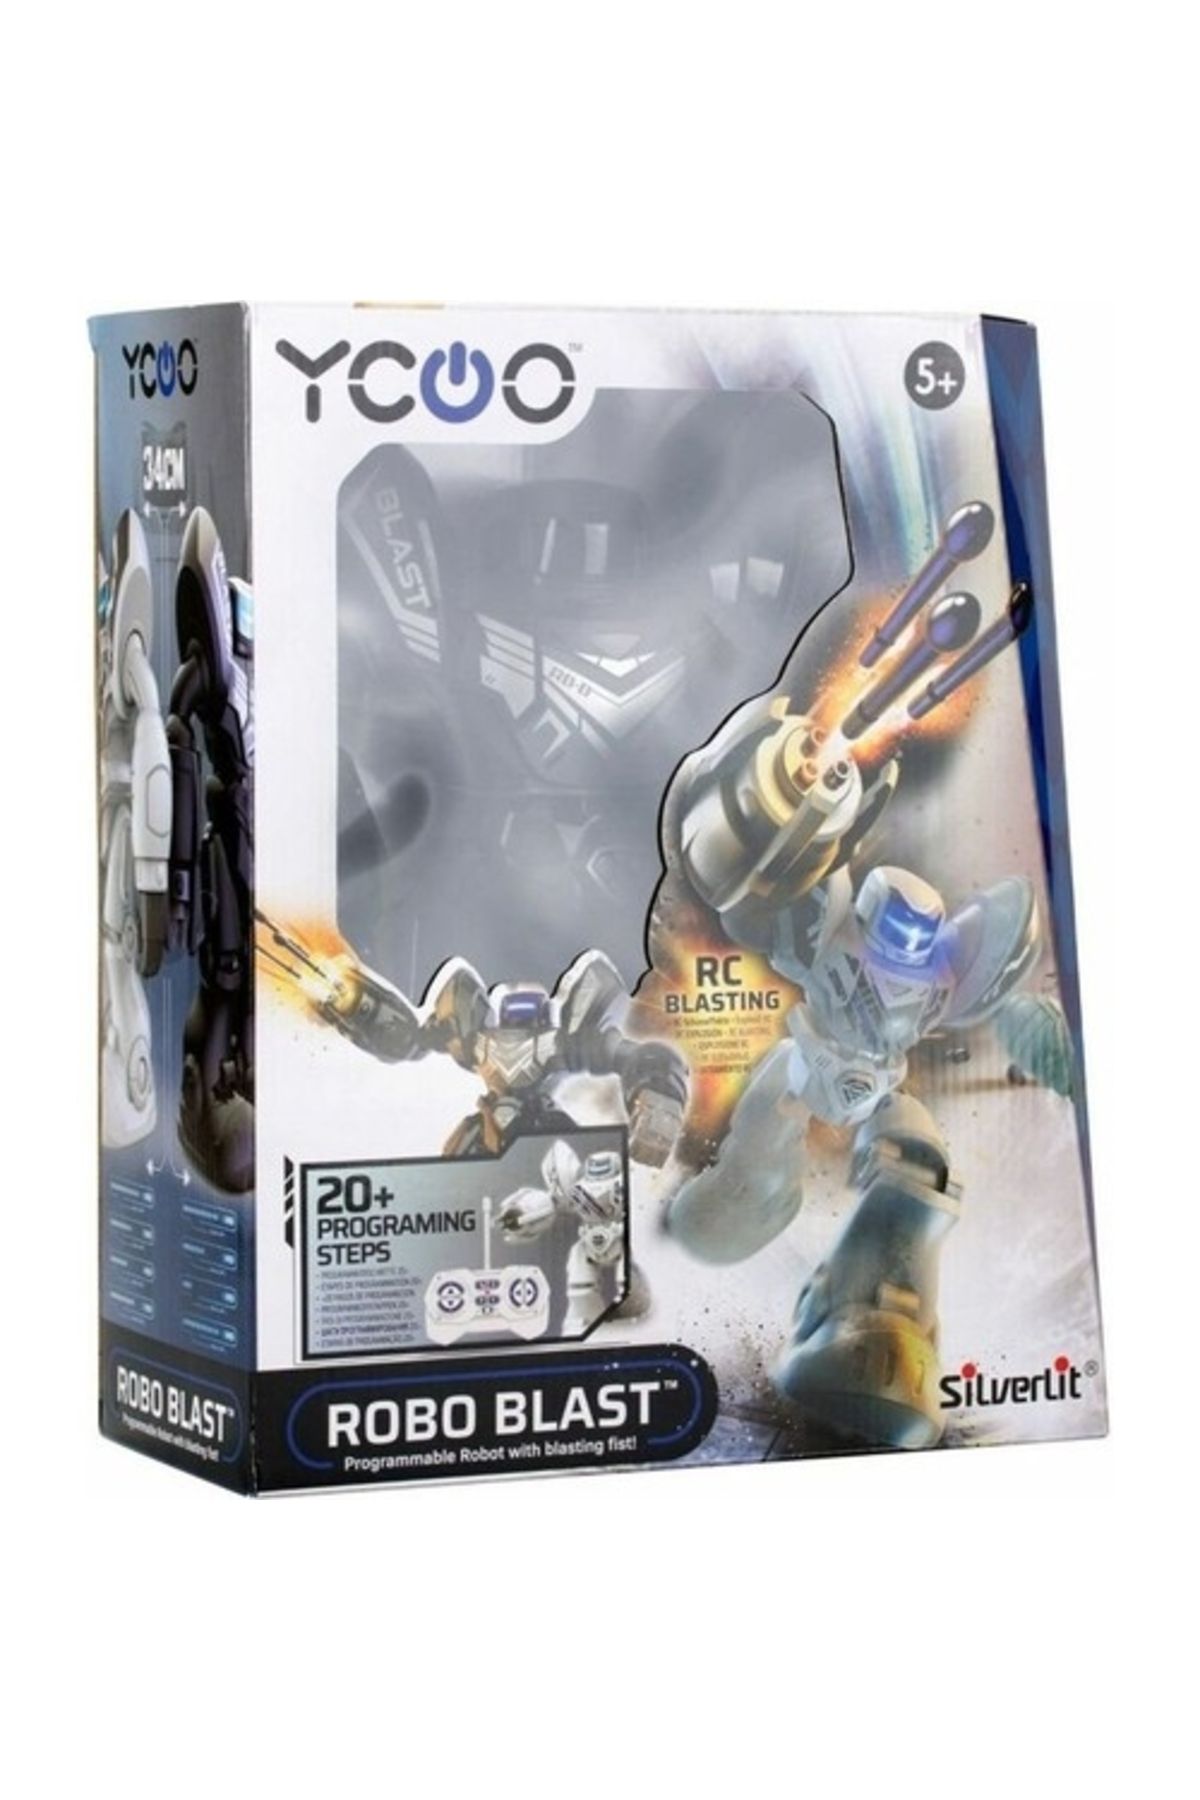 Silverlit Robo Blast Silverlit Robot